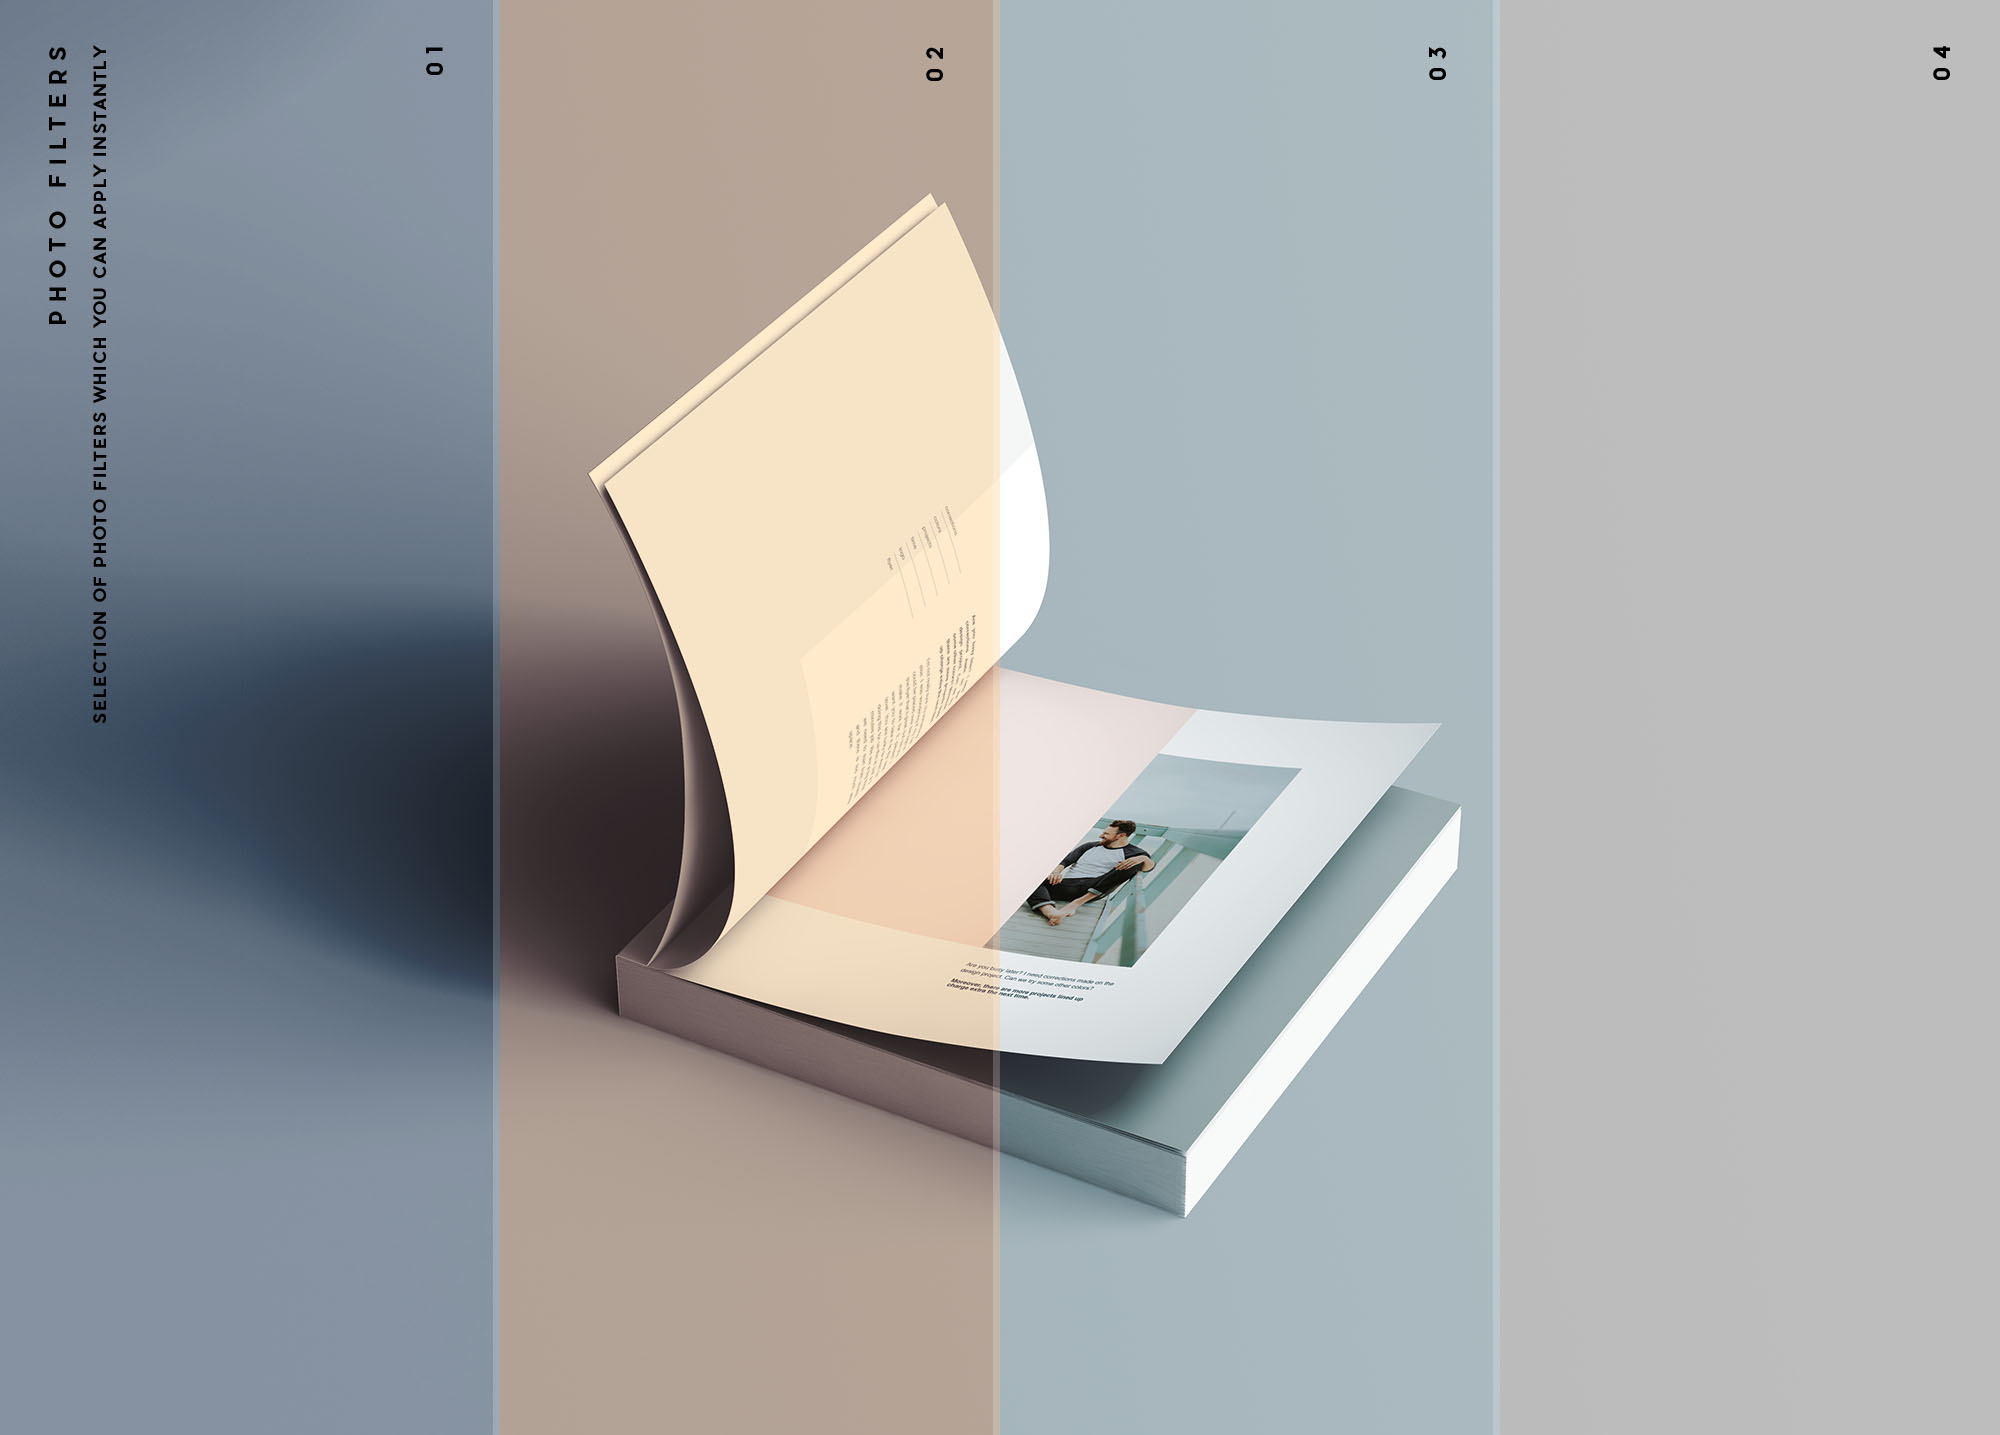 高质量方形平装书籍封面封底内页设计贴图展示样机 Square